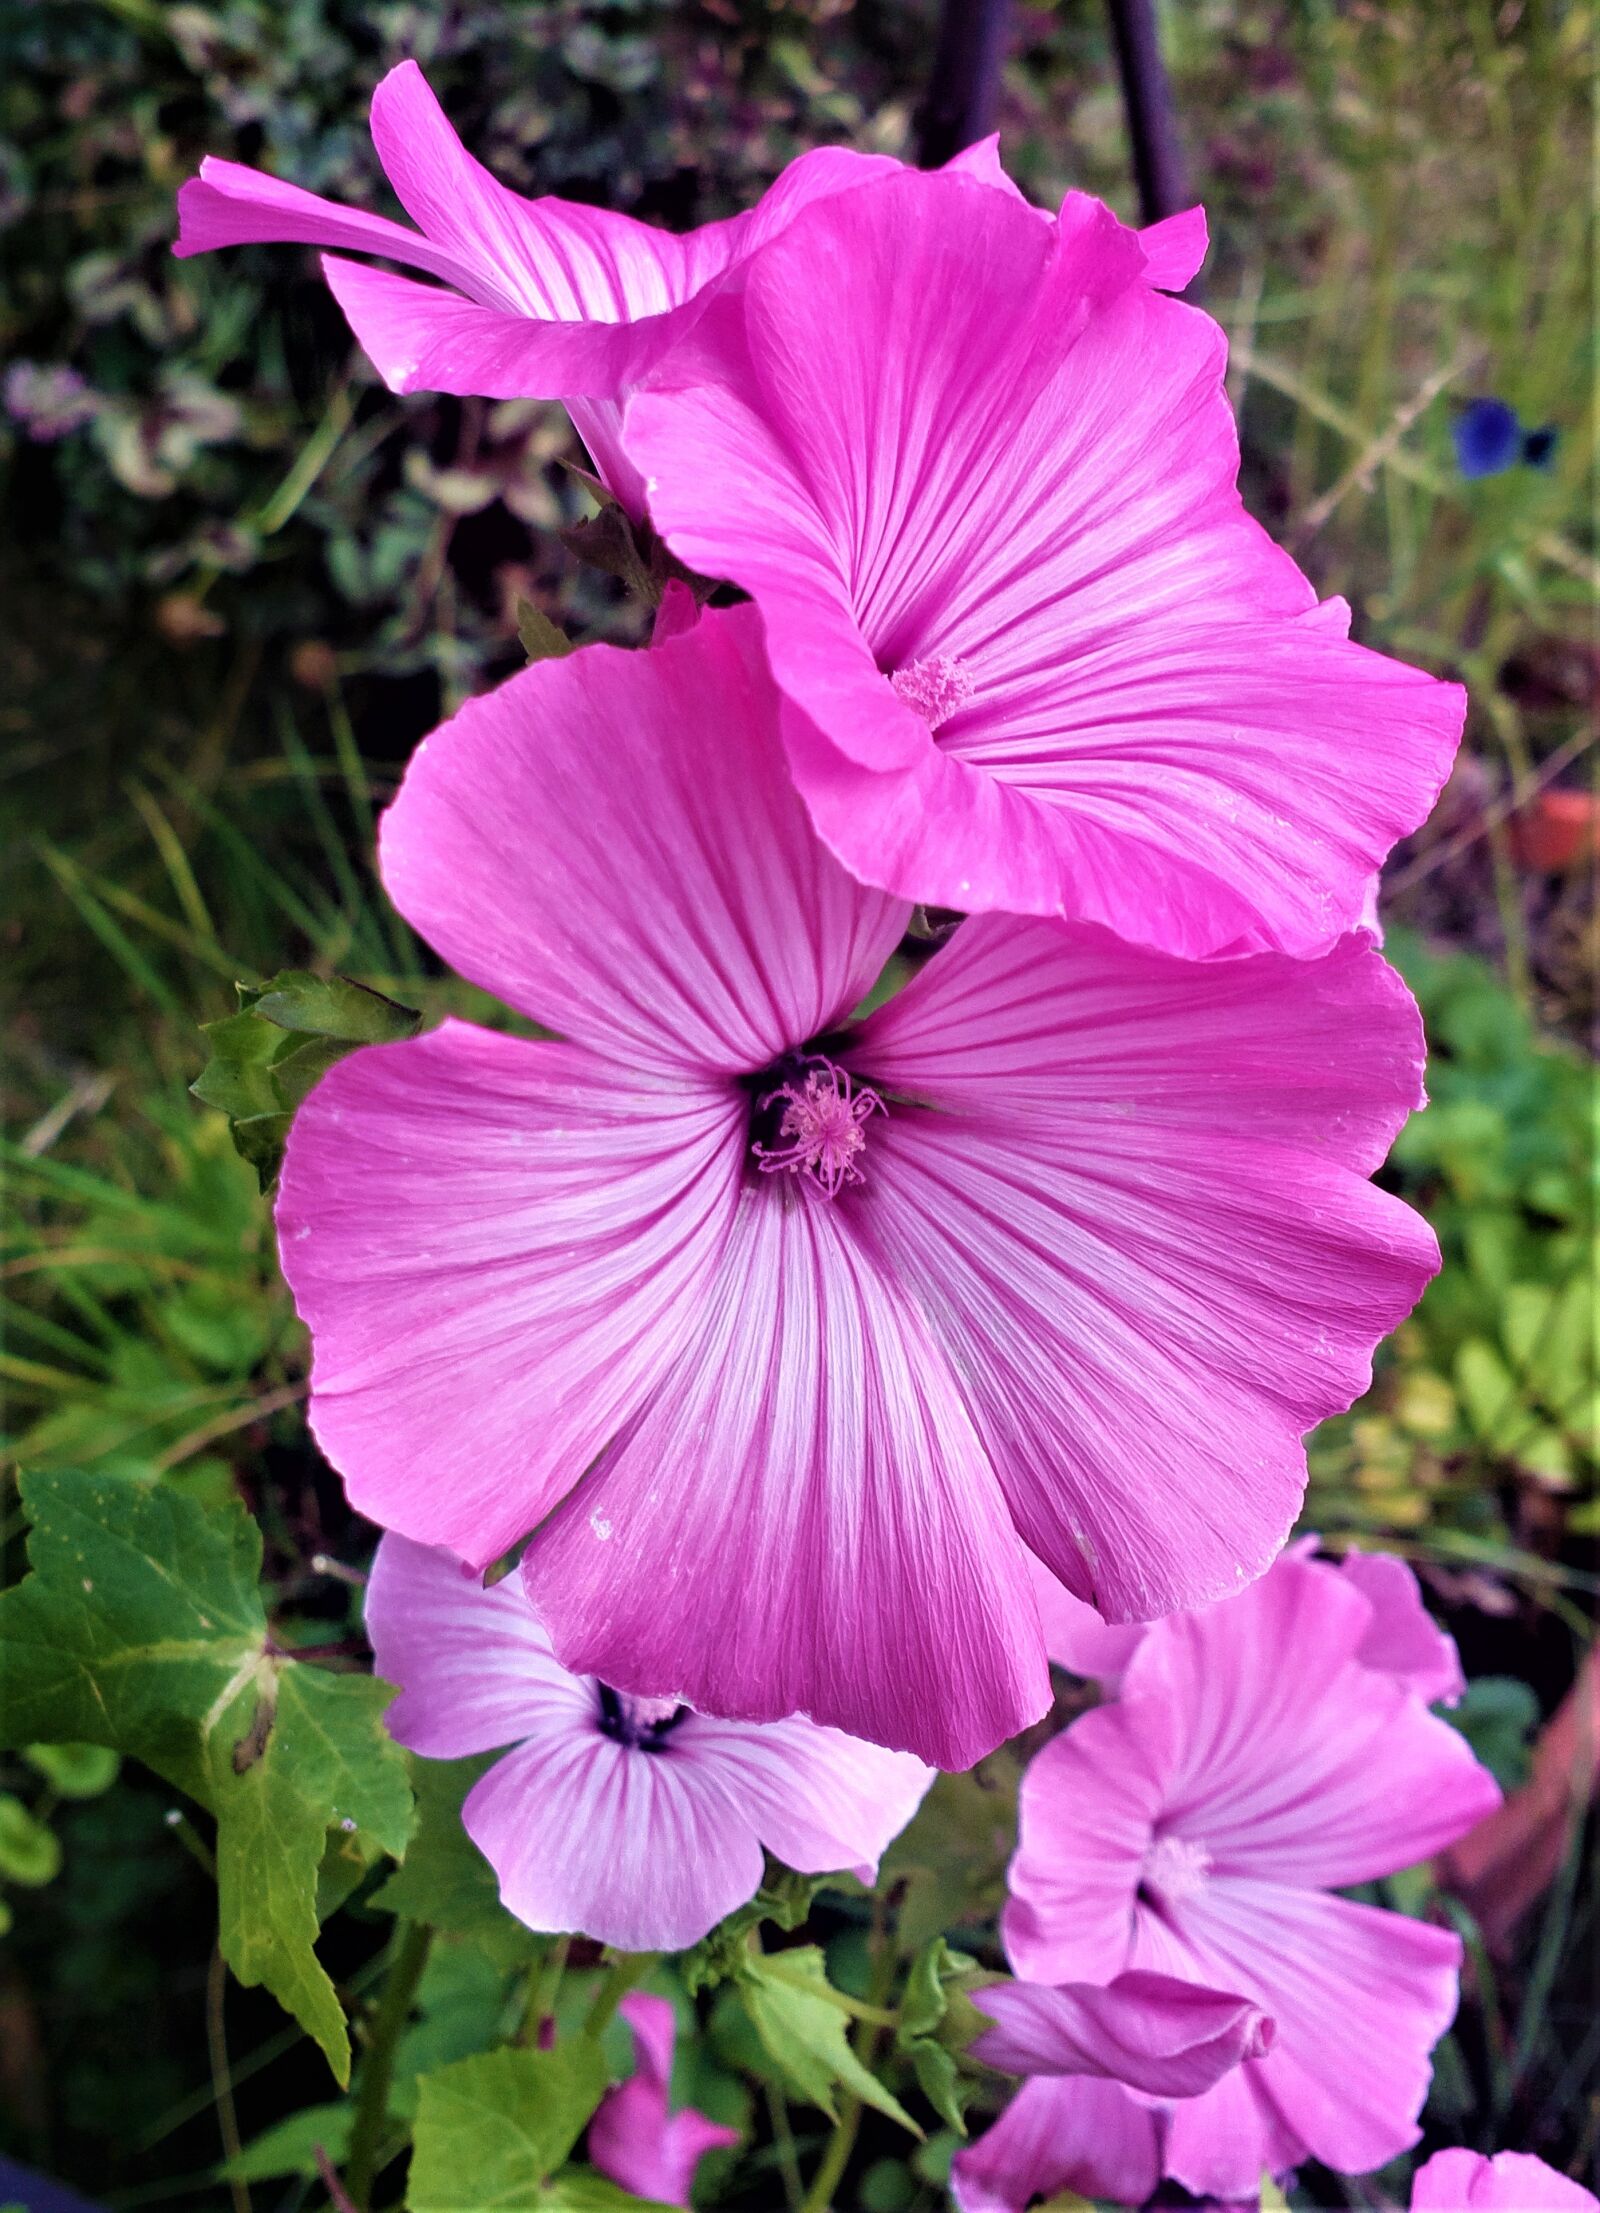 Nokia 808 PureView sample photo. Flower, garden, flora photography